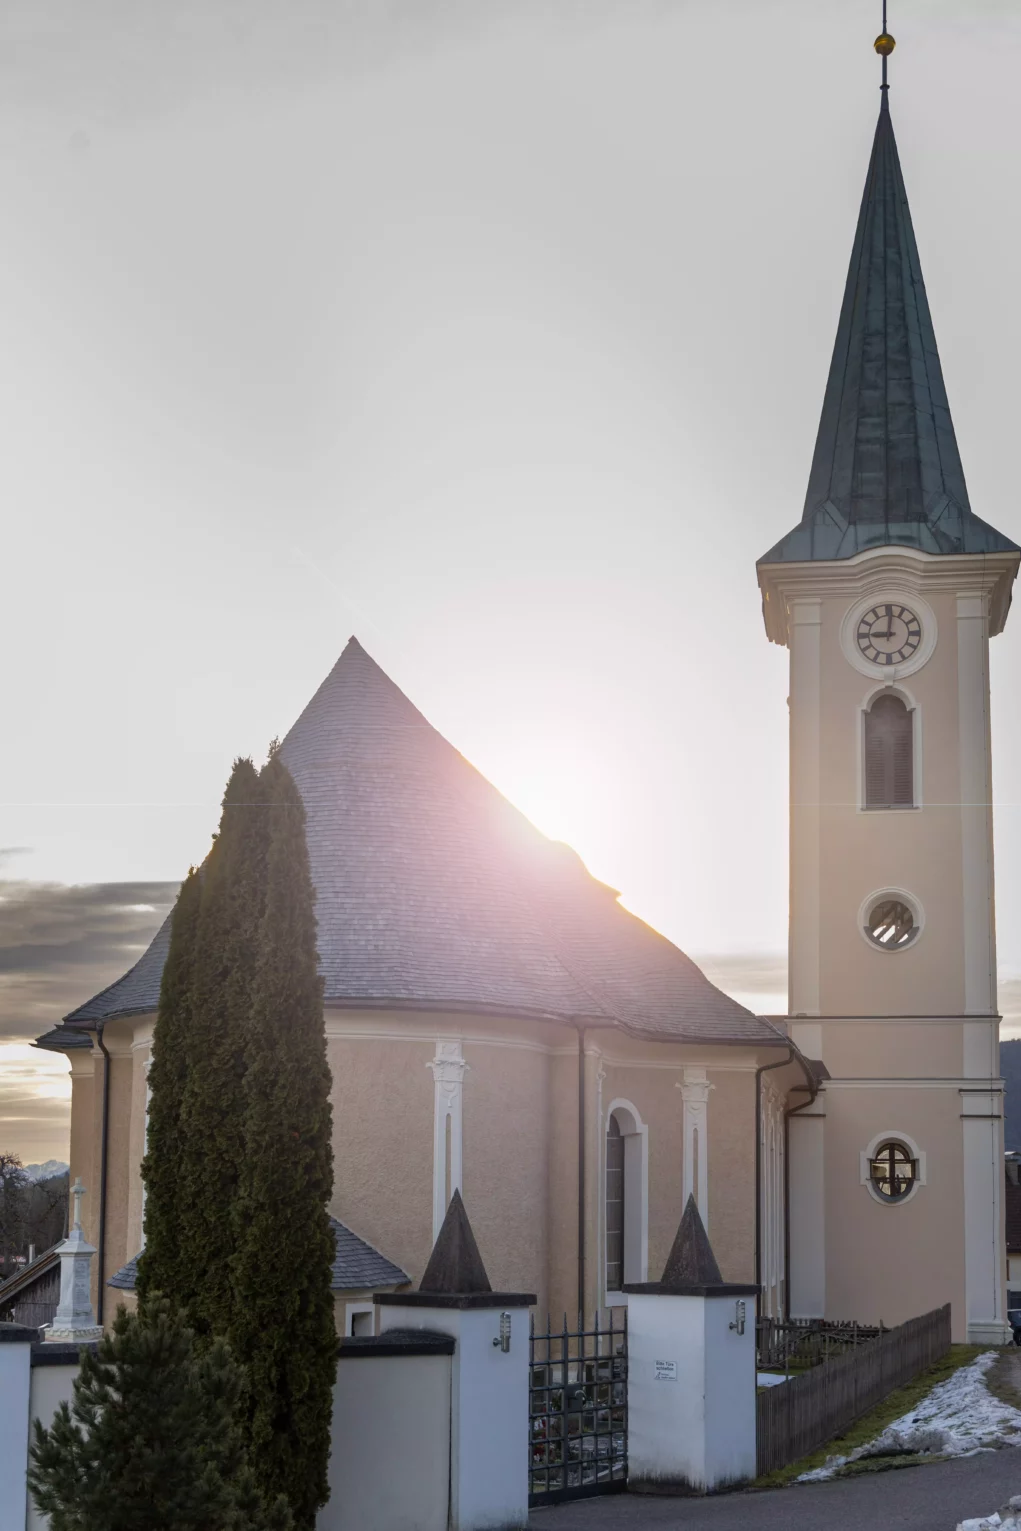 Rotary Club übergab 10.000 Euro für Orgel-Renovierung